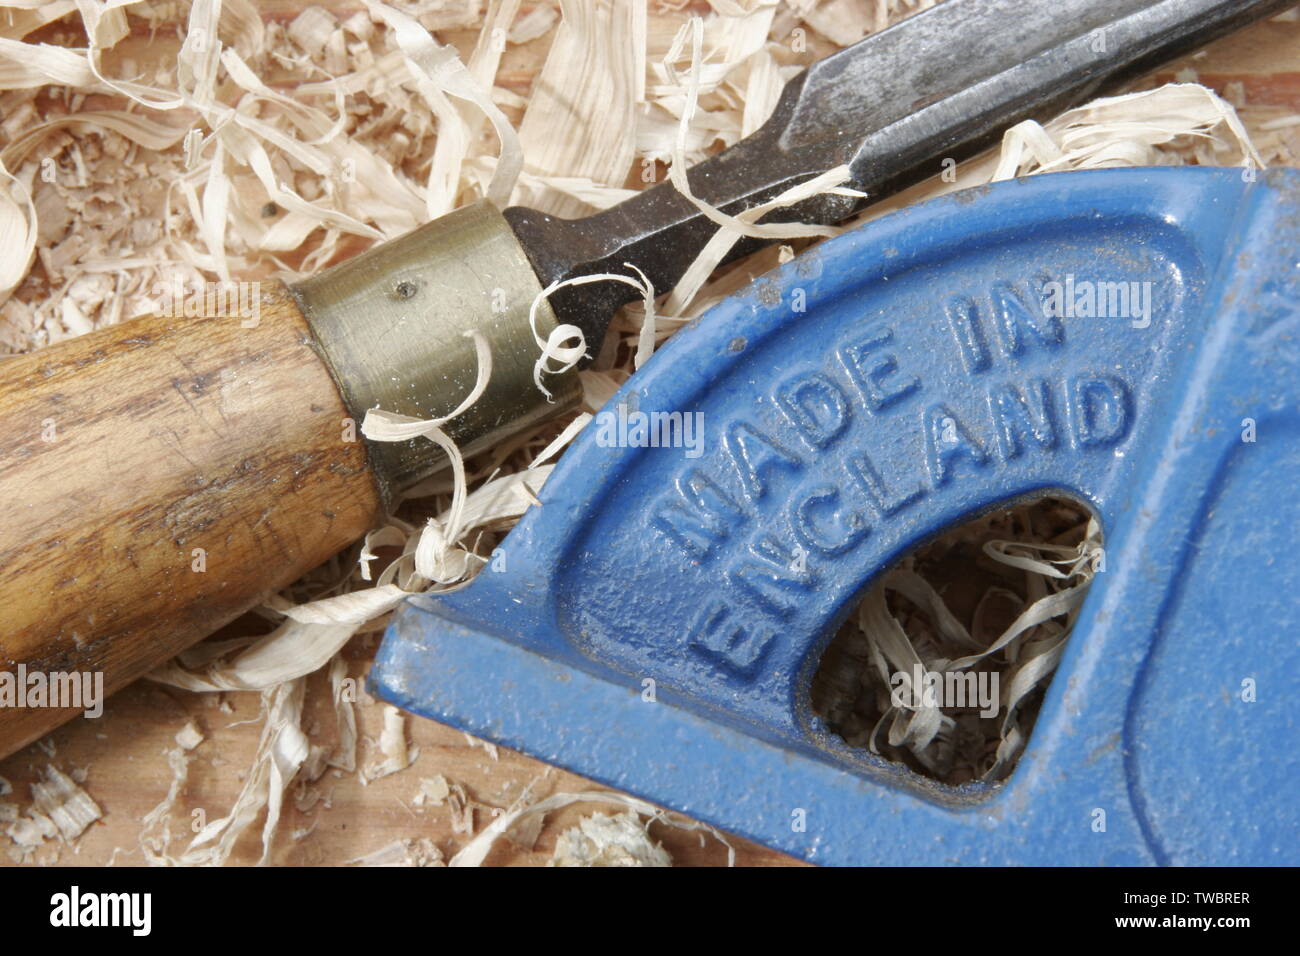 British realizzati strumenti per la lavorazione del legno con incisa la 'Made in Inghilterra " Foto Stock